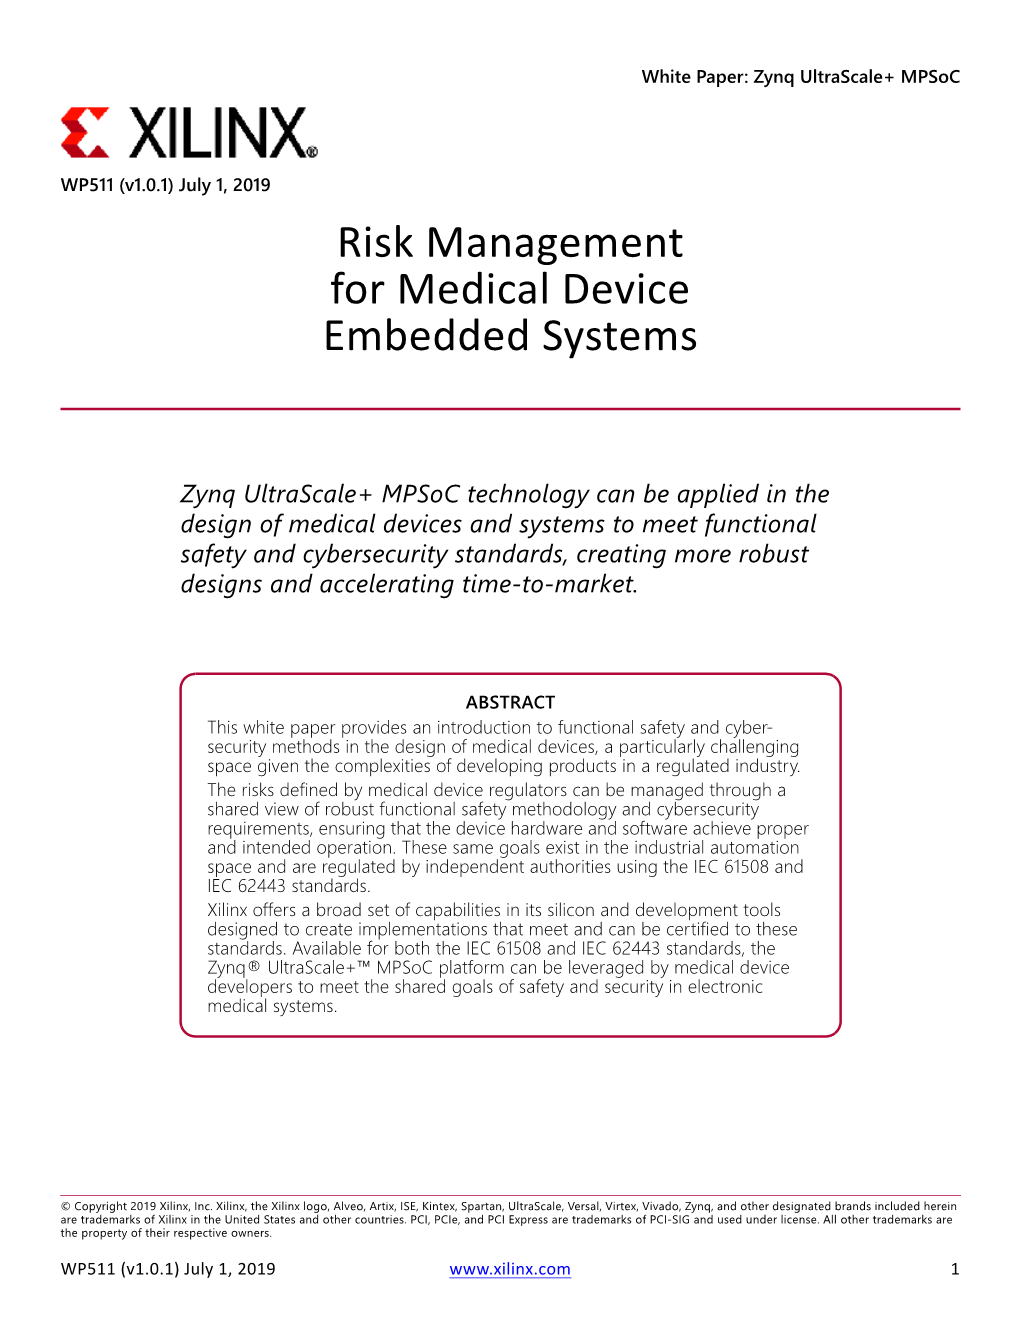 WP511 (V1.0.1) July 1, 2019 Risk Management for Medical Device Embedded Systems